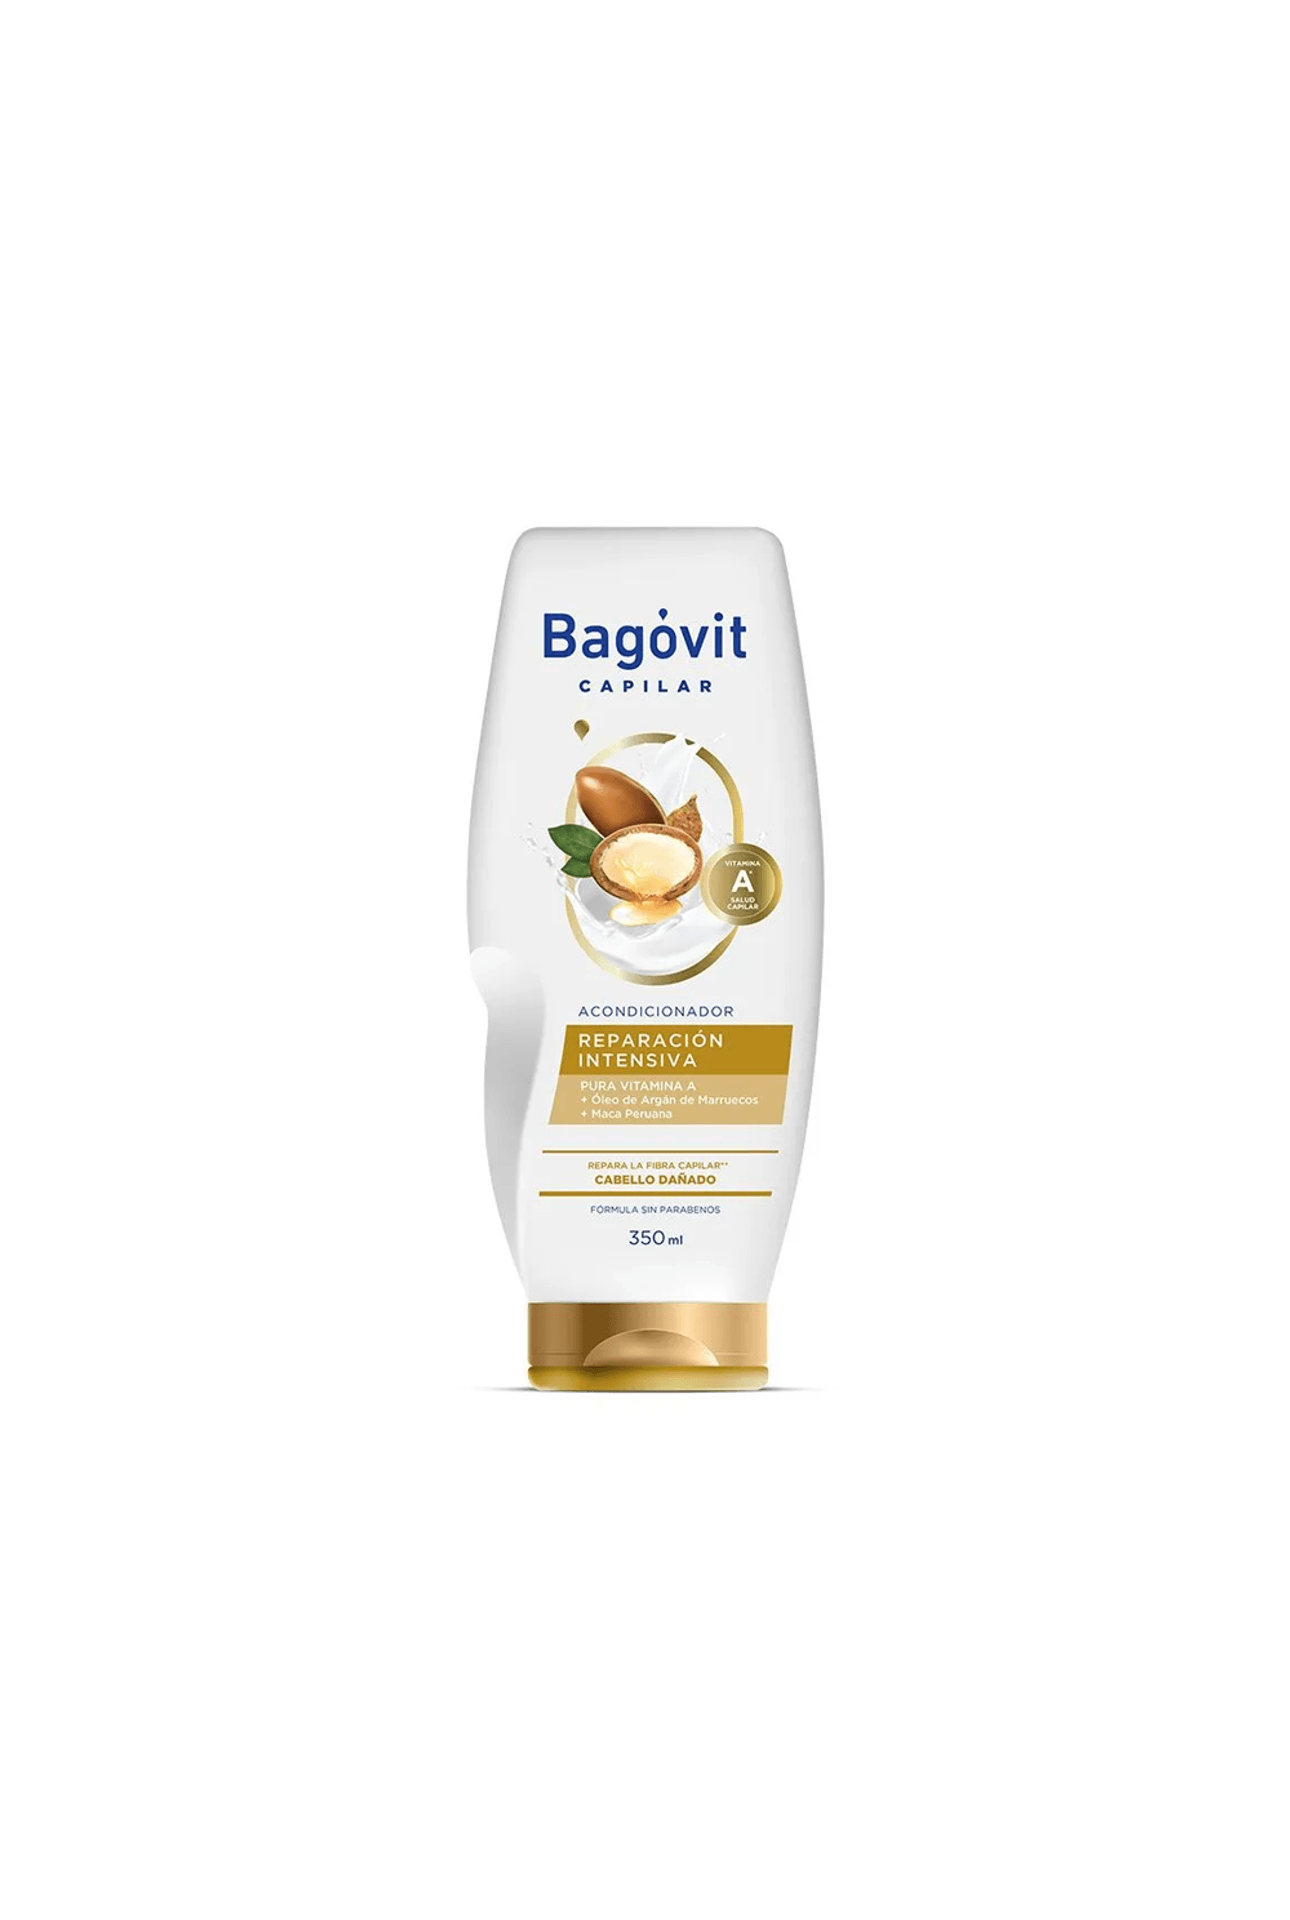 Bagovit-Acondicionador-Bagovit-Capilar-Reparacion-x-350ml-7790375269753_img1